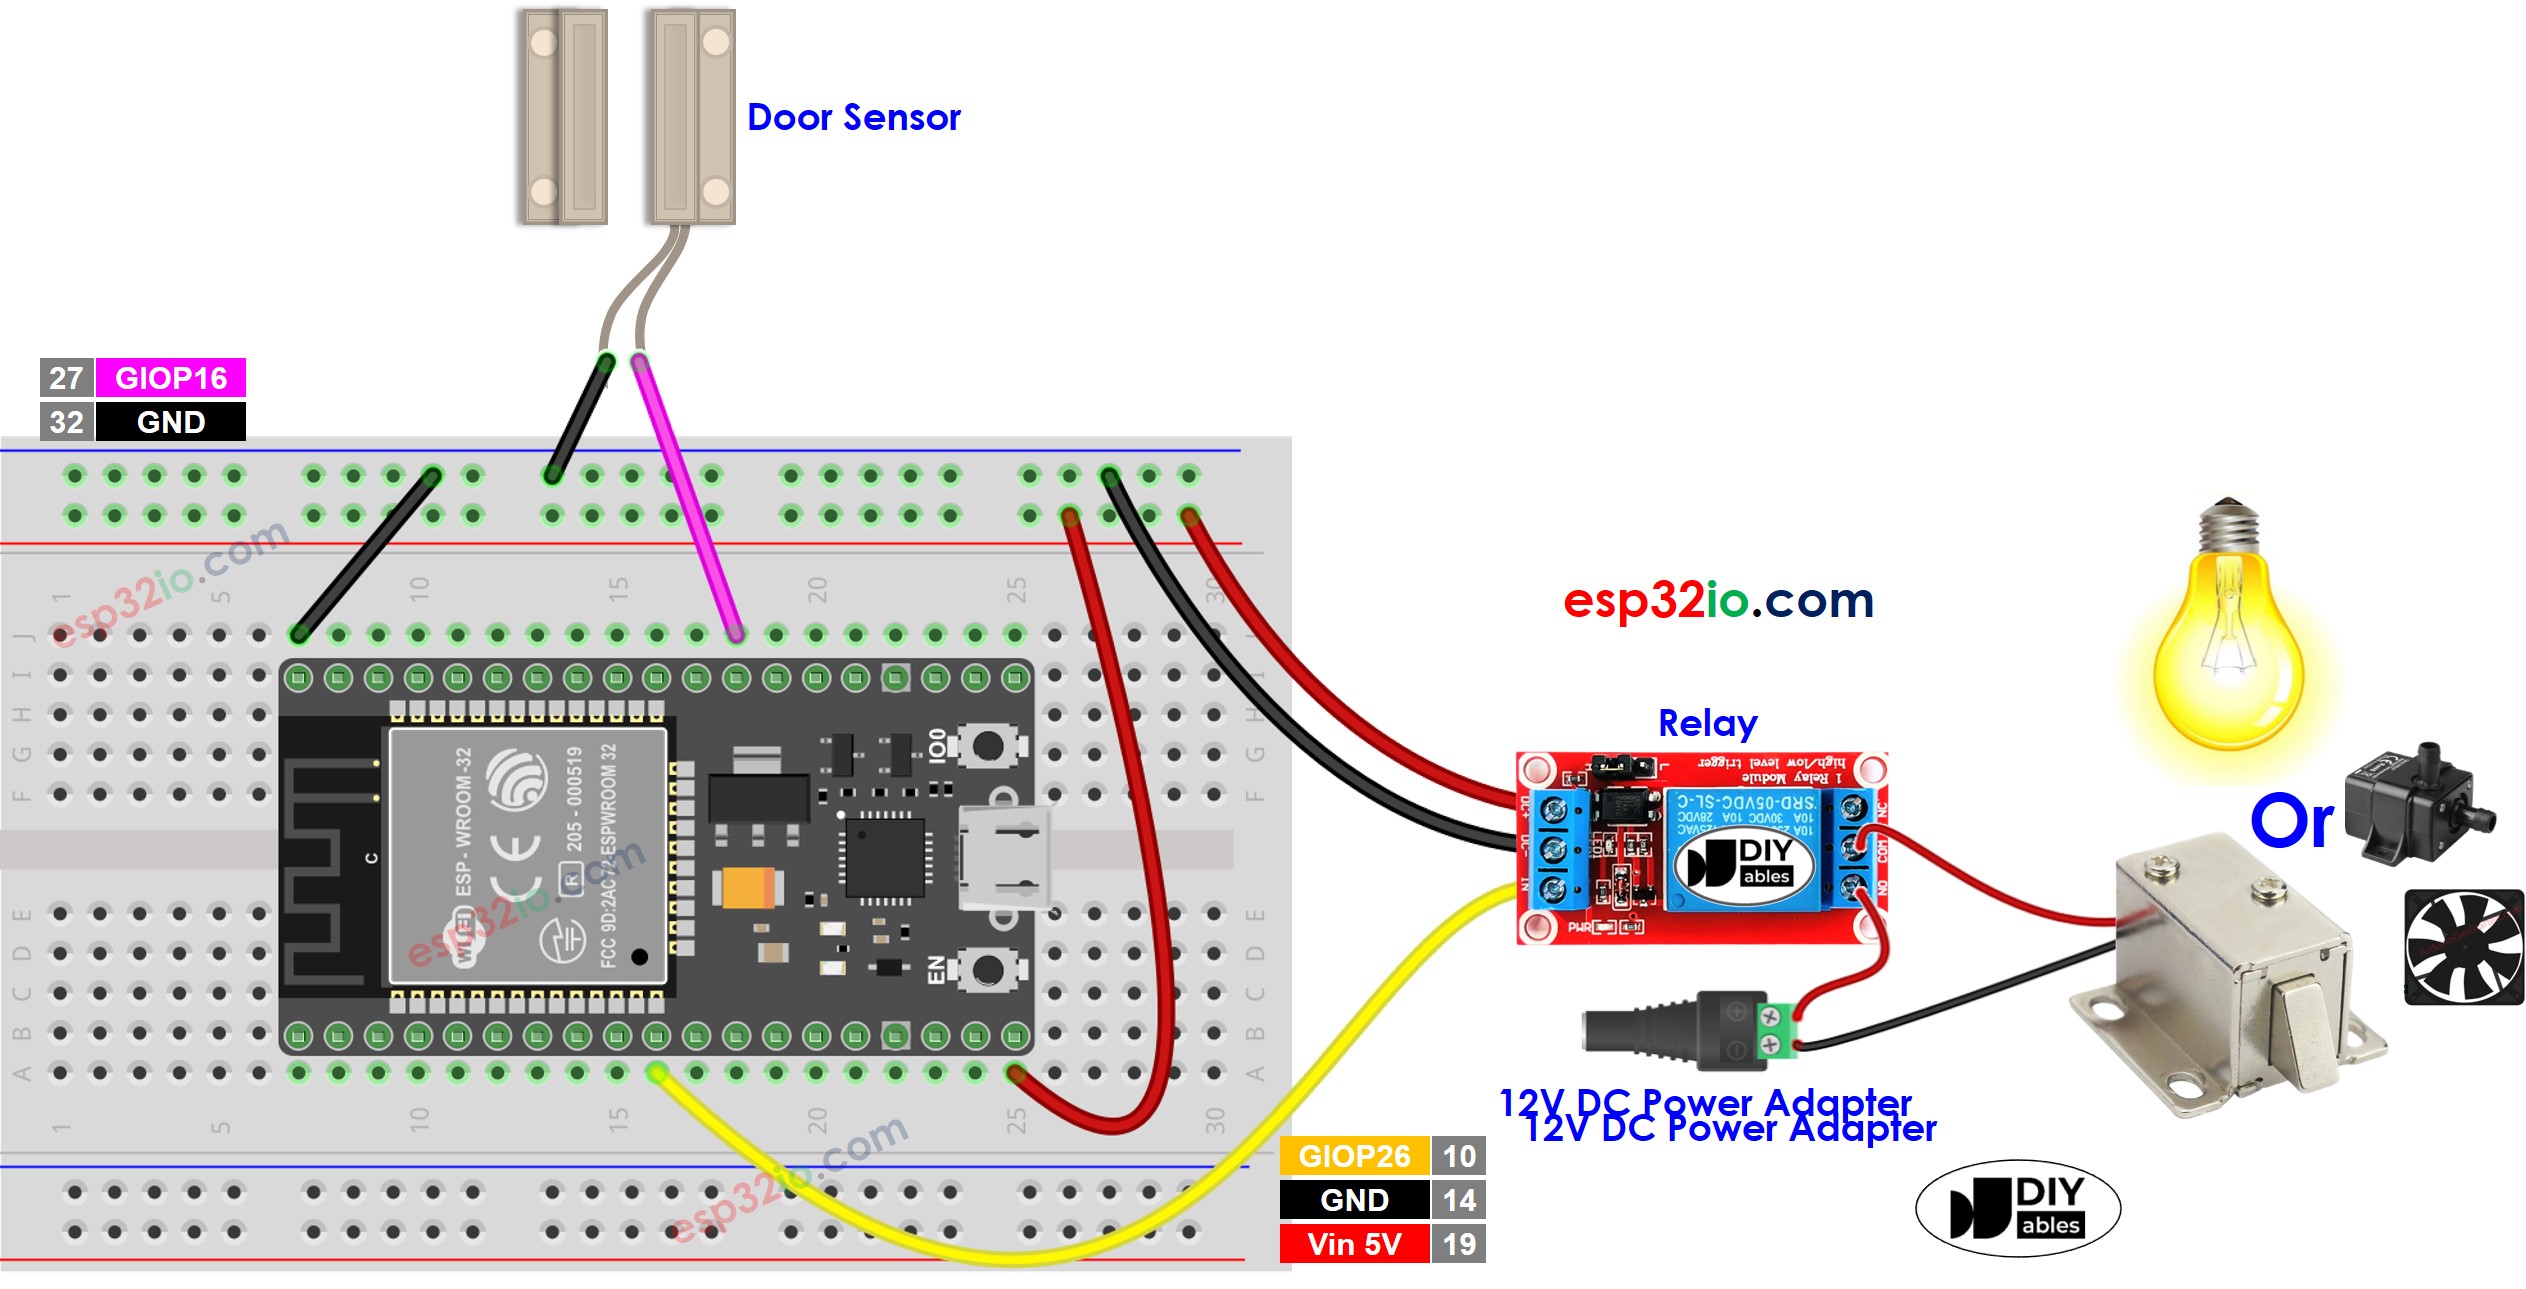 wiring diagram between esp32 door sensor relay